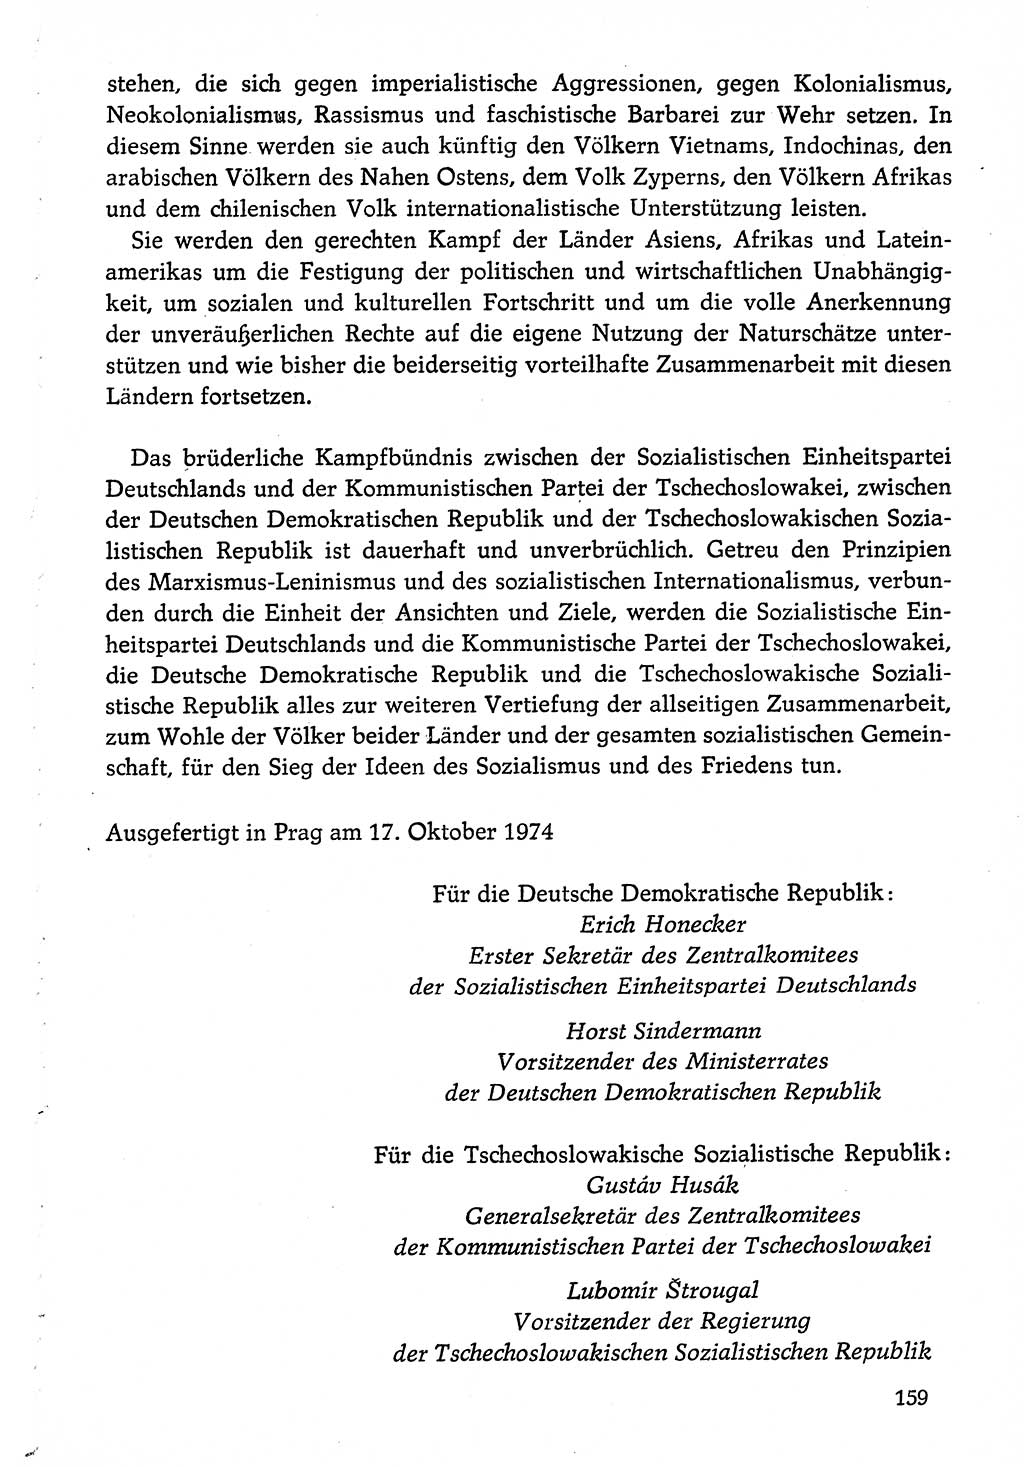 Dokumente der Sozialistischen Einheitspartei Deutschlands (SED) [Deutsche Demokratische Republik (DDR)] 1974-1975, Seite 159 (Dok. SED DDR 1978, Bd. ⅩⅤ, S. 159)